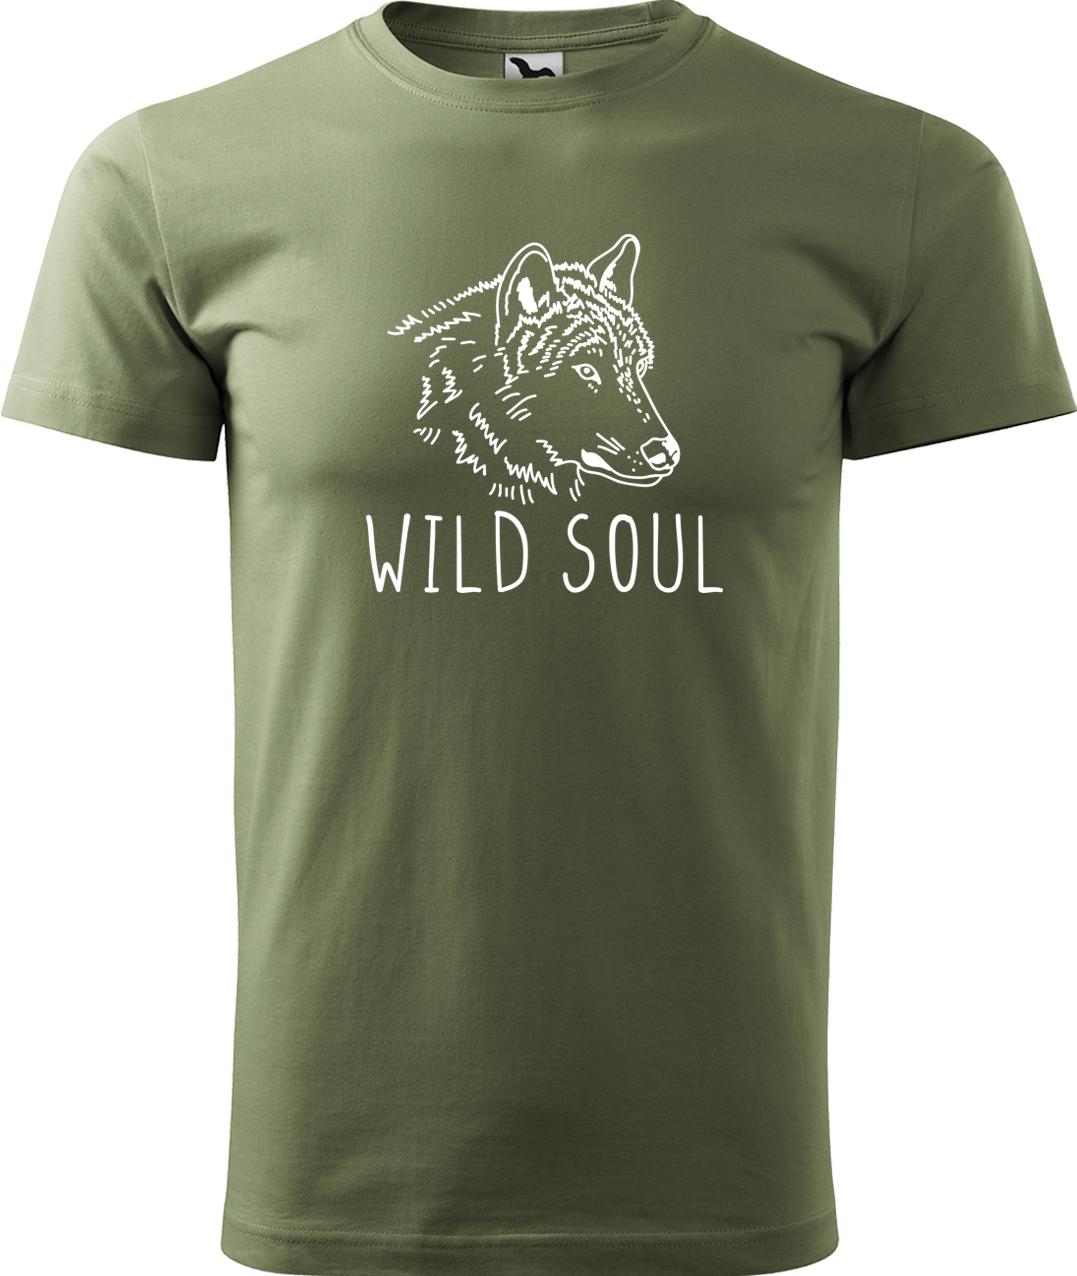 Pánské tričko s vlkem - Wild soul Velikost: S, Barva: Světlá khaki (28), Střih: pánský